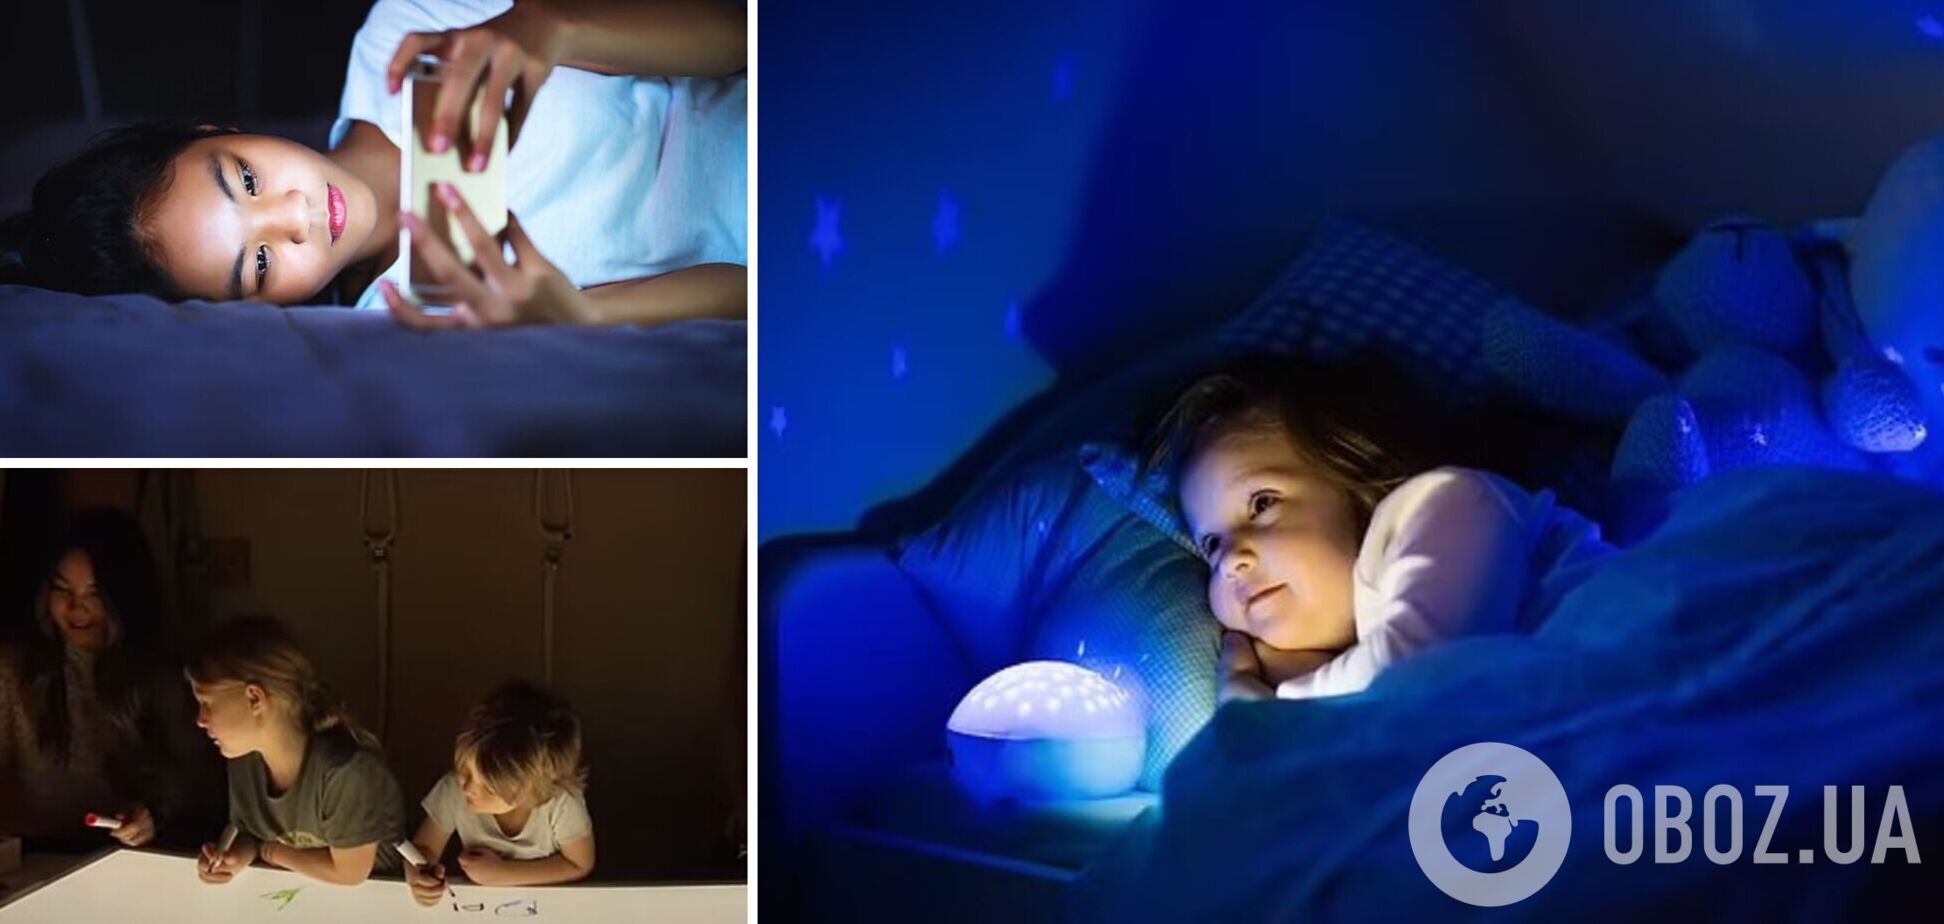 Нічники можуть порушити сон дітей: батьків закликали відмовитись від популярних іграшок